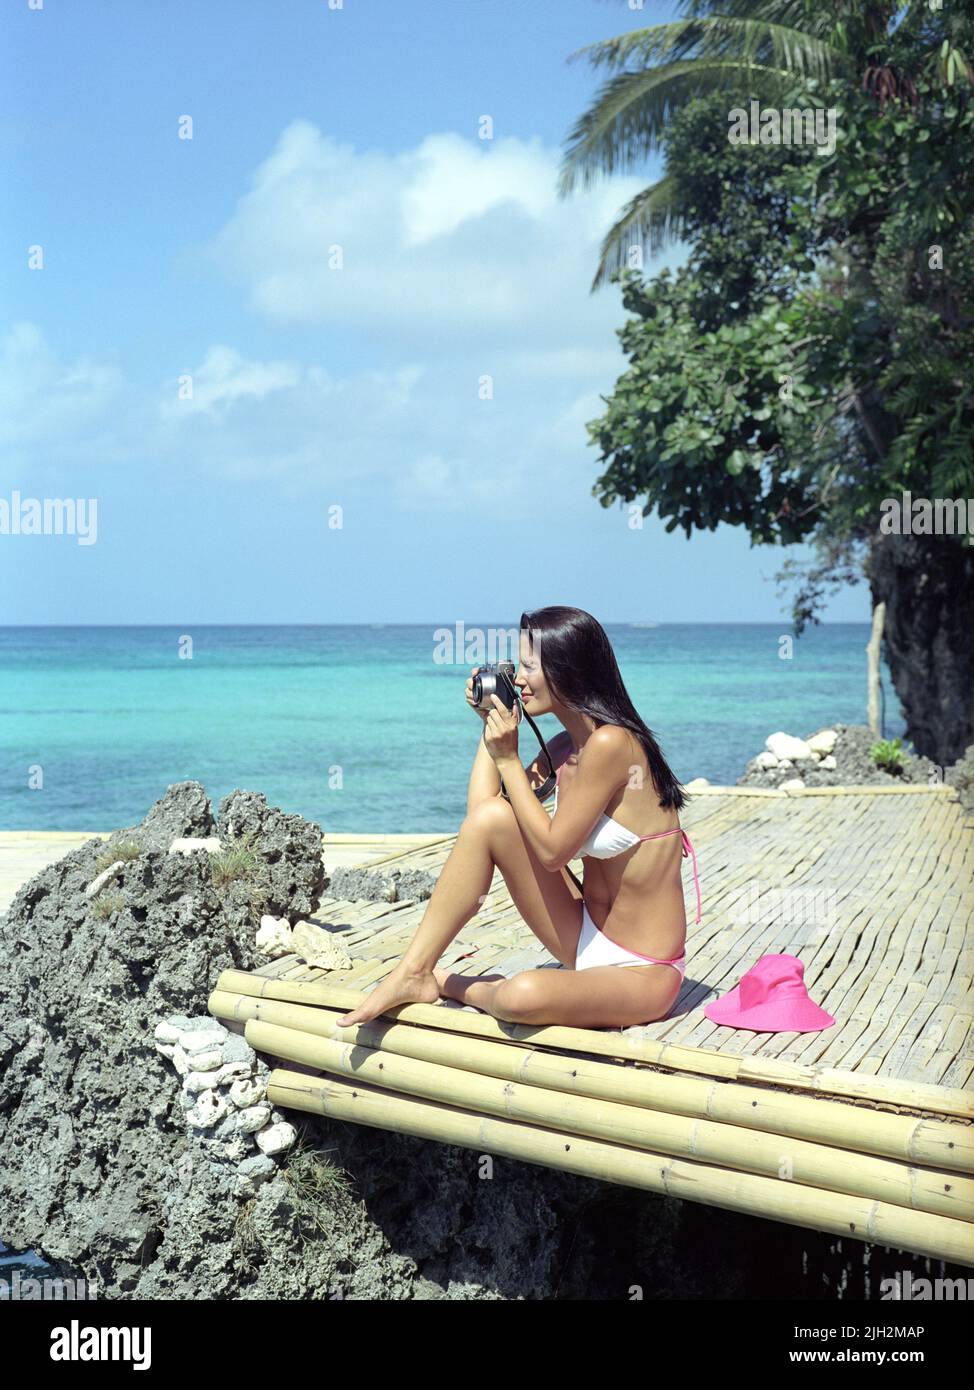 Mujer en bikini tomando una fotografía en un muelle de bambú. Boracay, Filipinas. Foto de stock